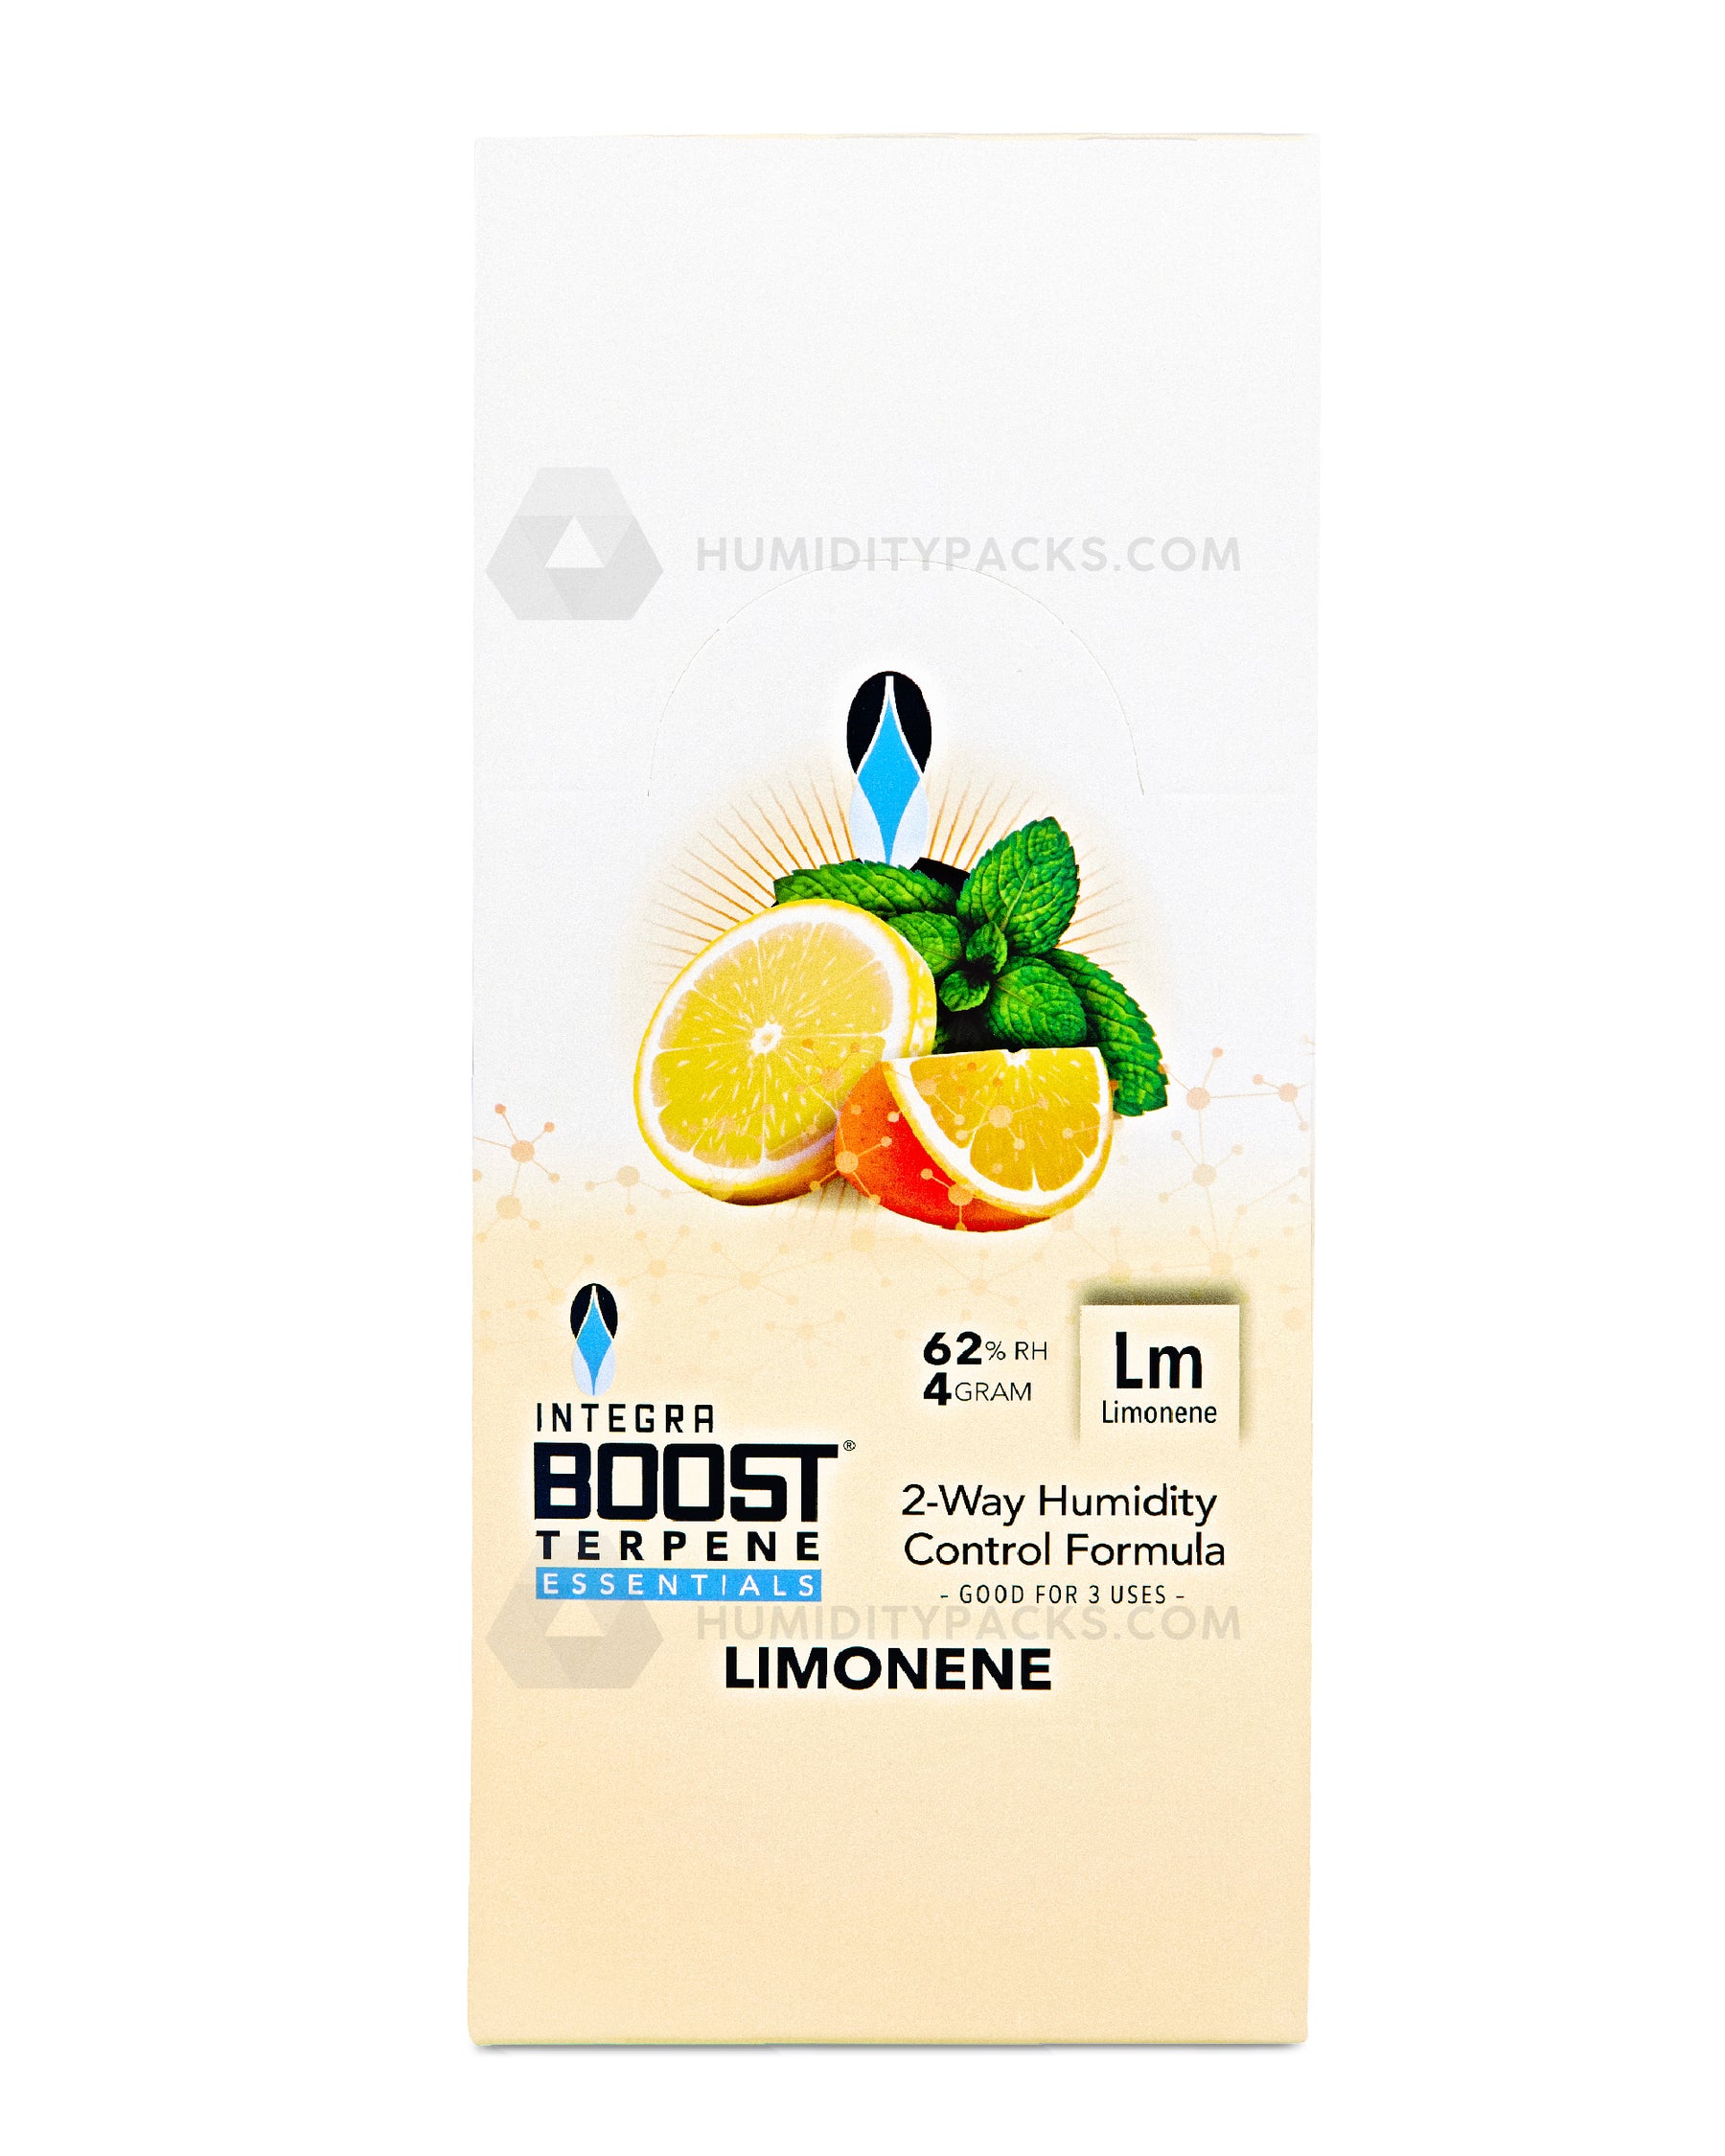 Integra Boost 4 Gram 2-Way Terpene Essentials Limonene Humidity Packs (62%) 48-Box Humidity Packs - 8